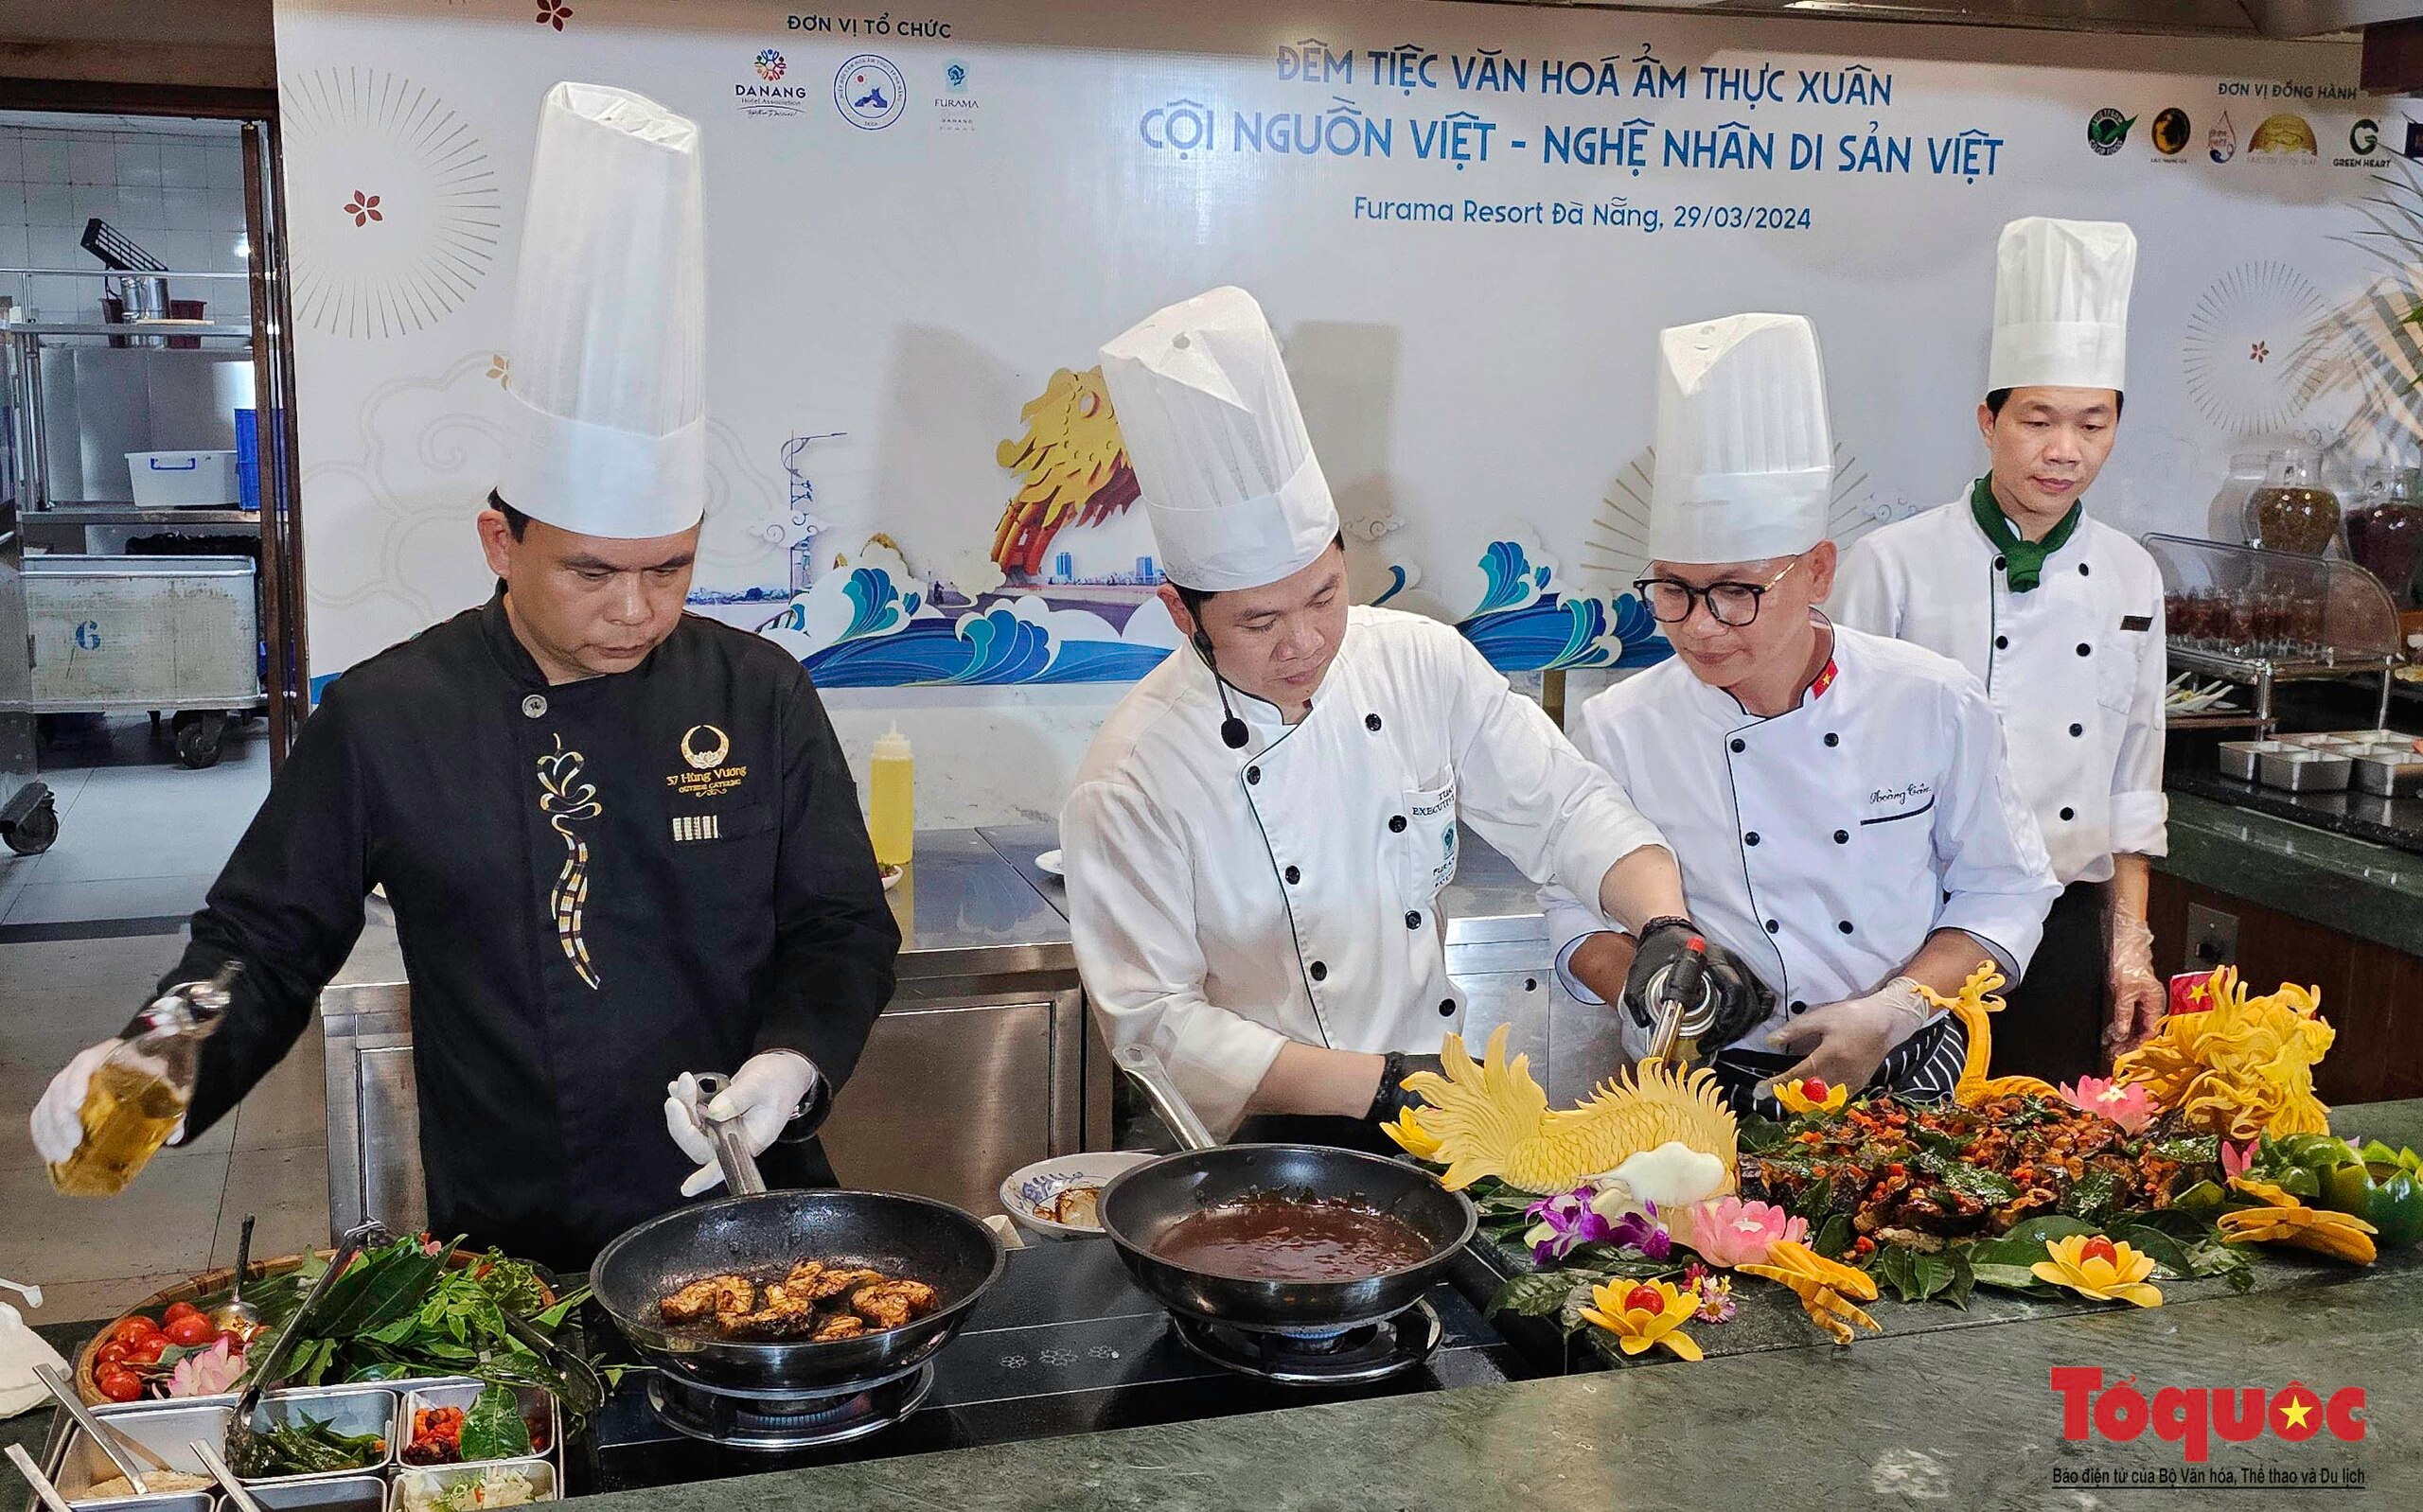 Xem các nghệ nhân ẩm thực hàng đầu Việt Nam quảng diễn những tinh hoa món ngon 3 miền - Ảnh 2.